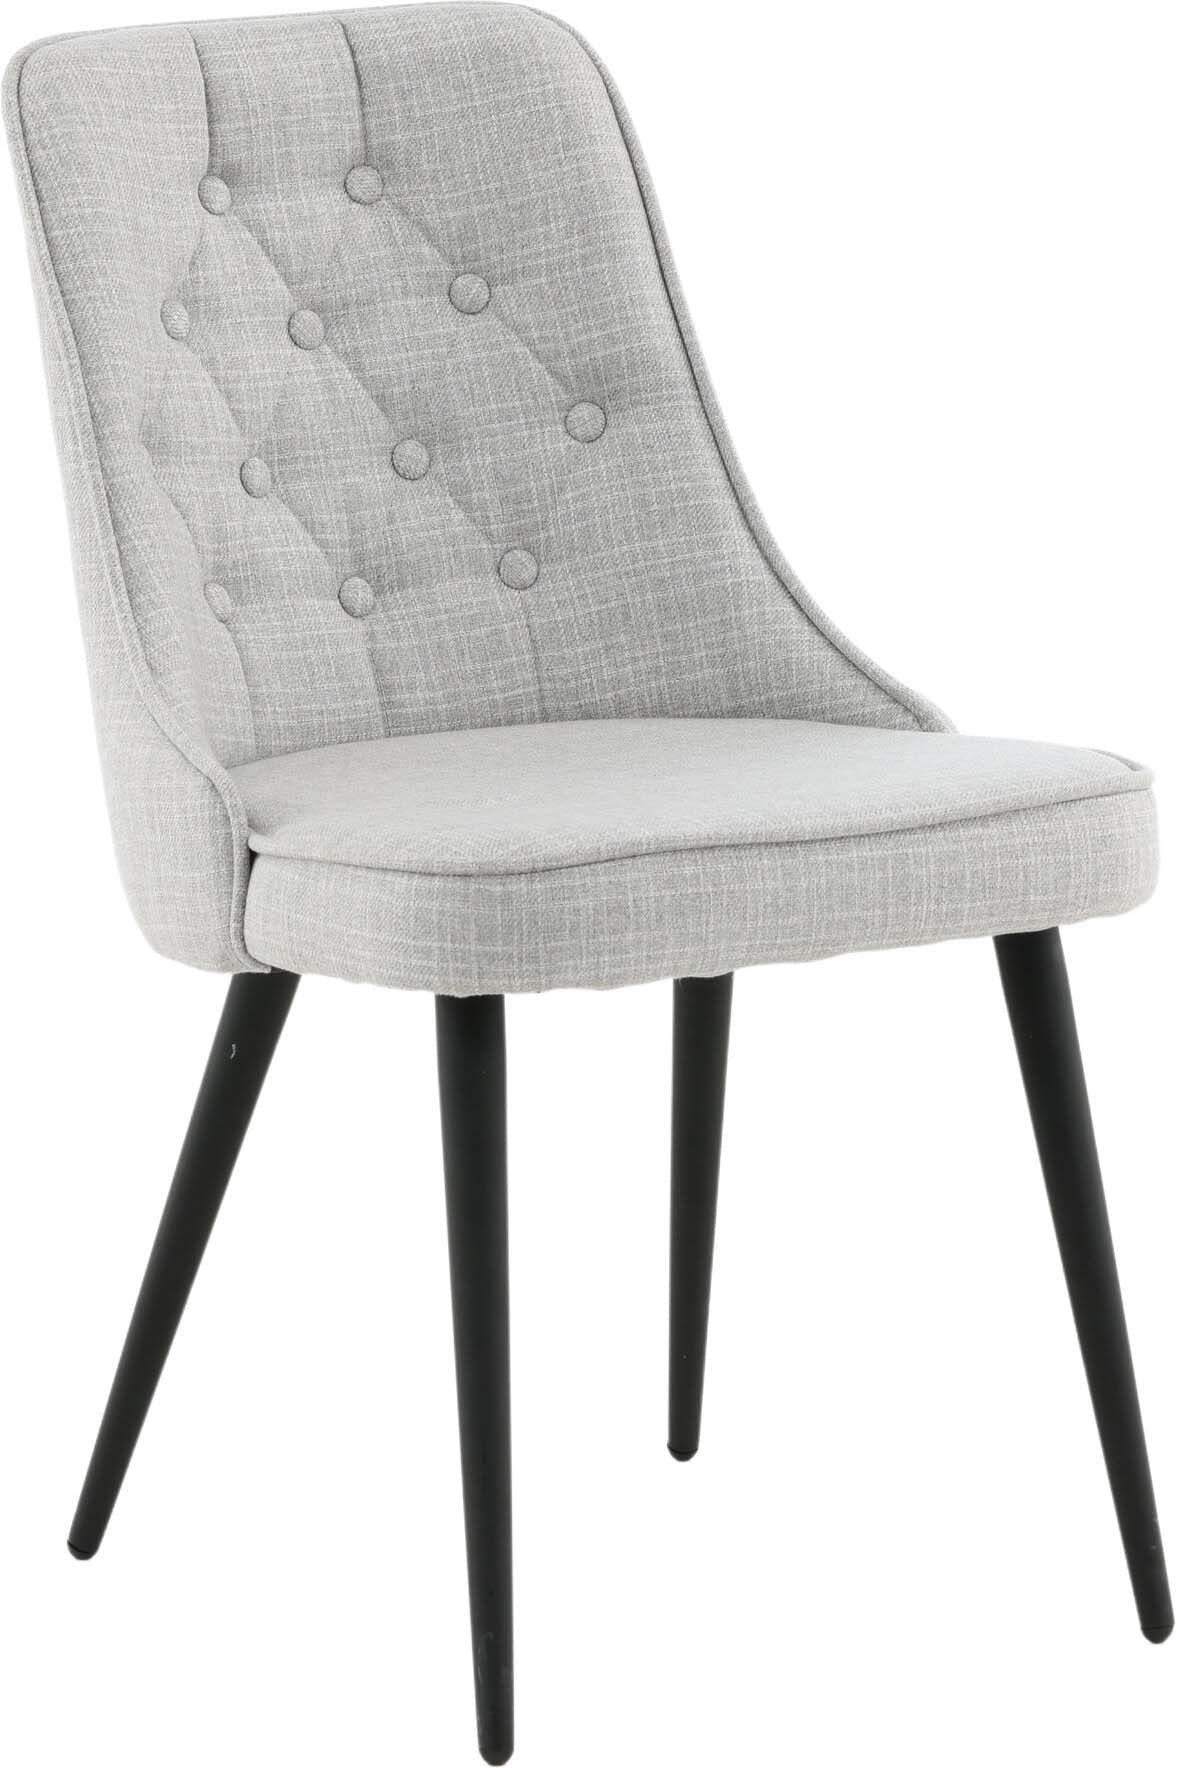 Velvet Deluxe Stuhl in Grau / Schwarz präsentiert im Onlineshop von KAQTU Design AG. Stuhl ist von Venture Home